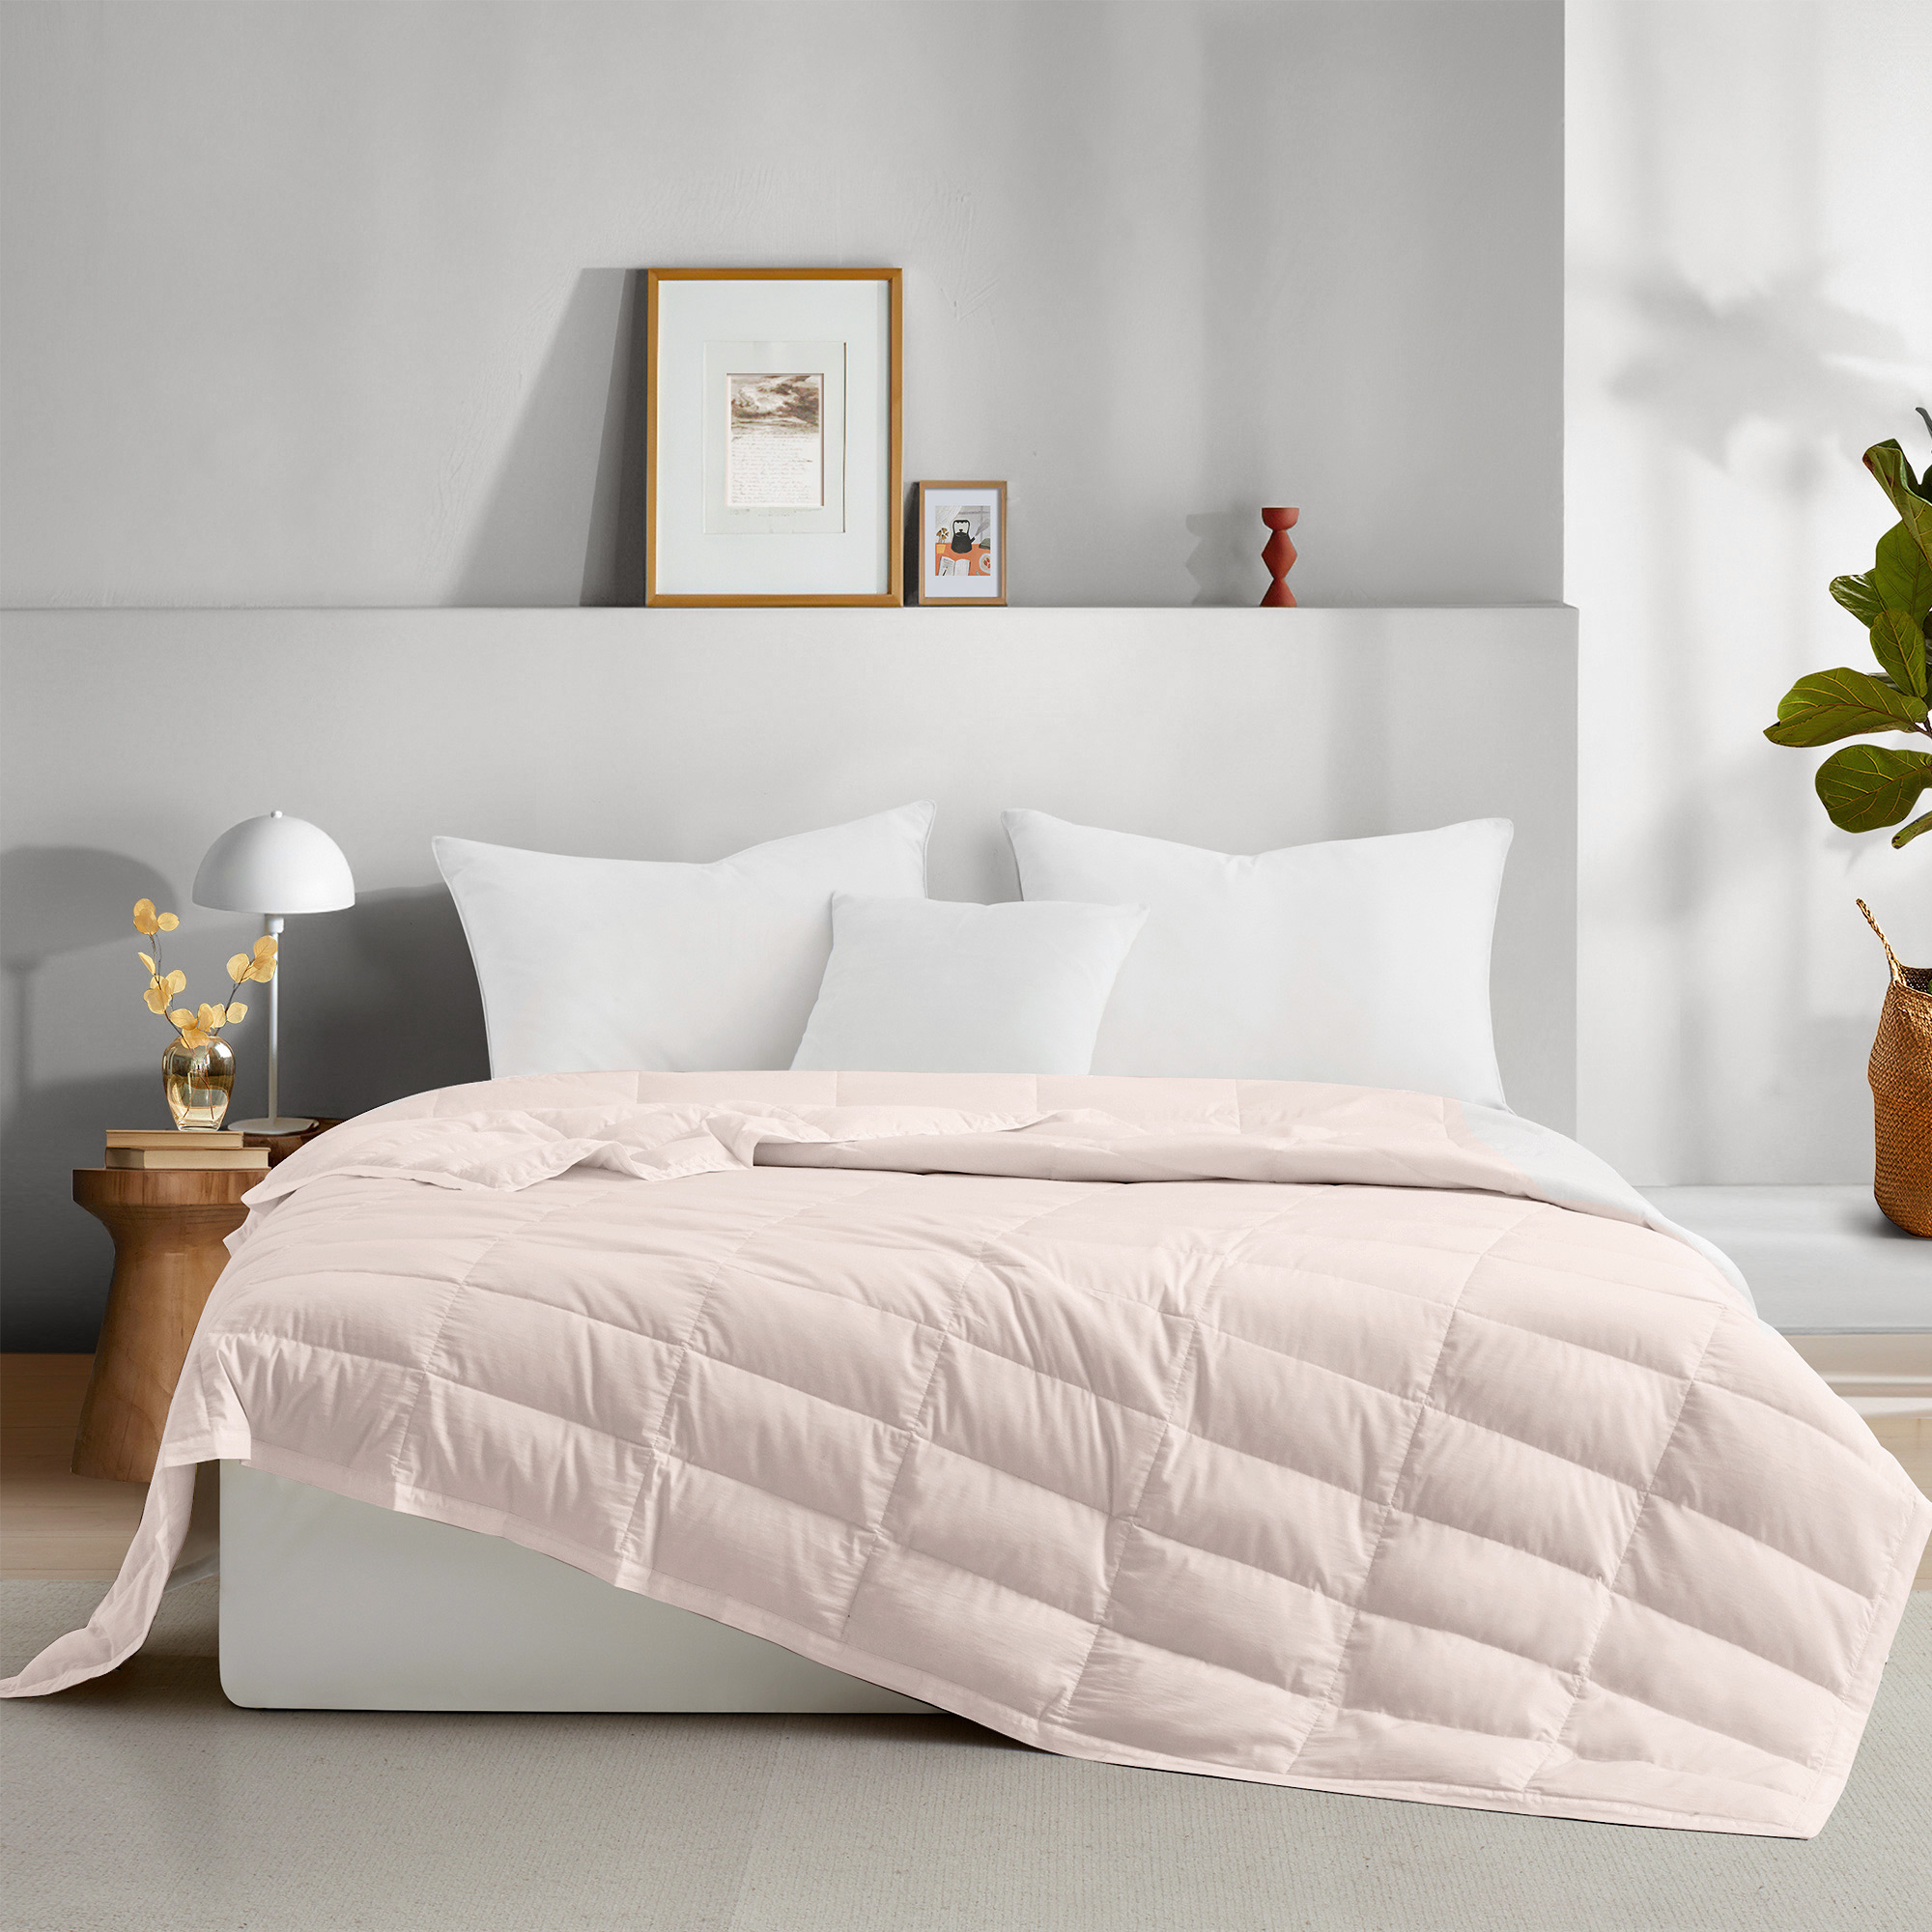 TENCELâ¢ Lyocell Lightweight Cooling Down Blanket-Luxurious Comfort Summer Blanket - Shell Pink, King